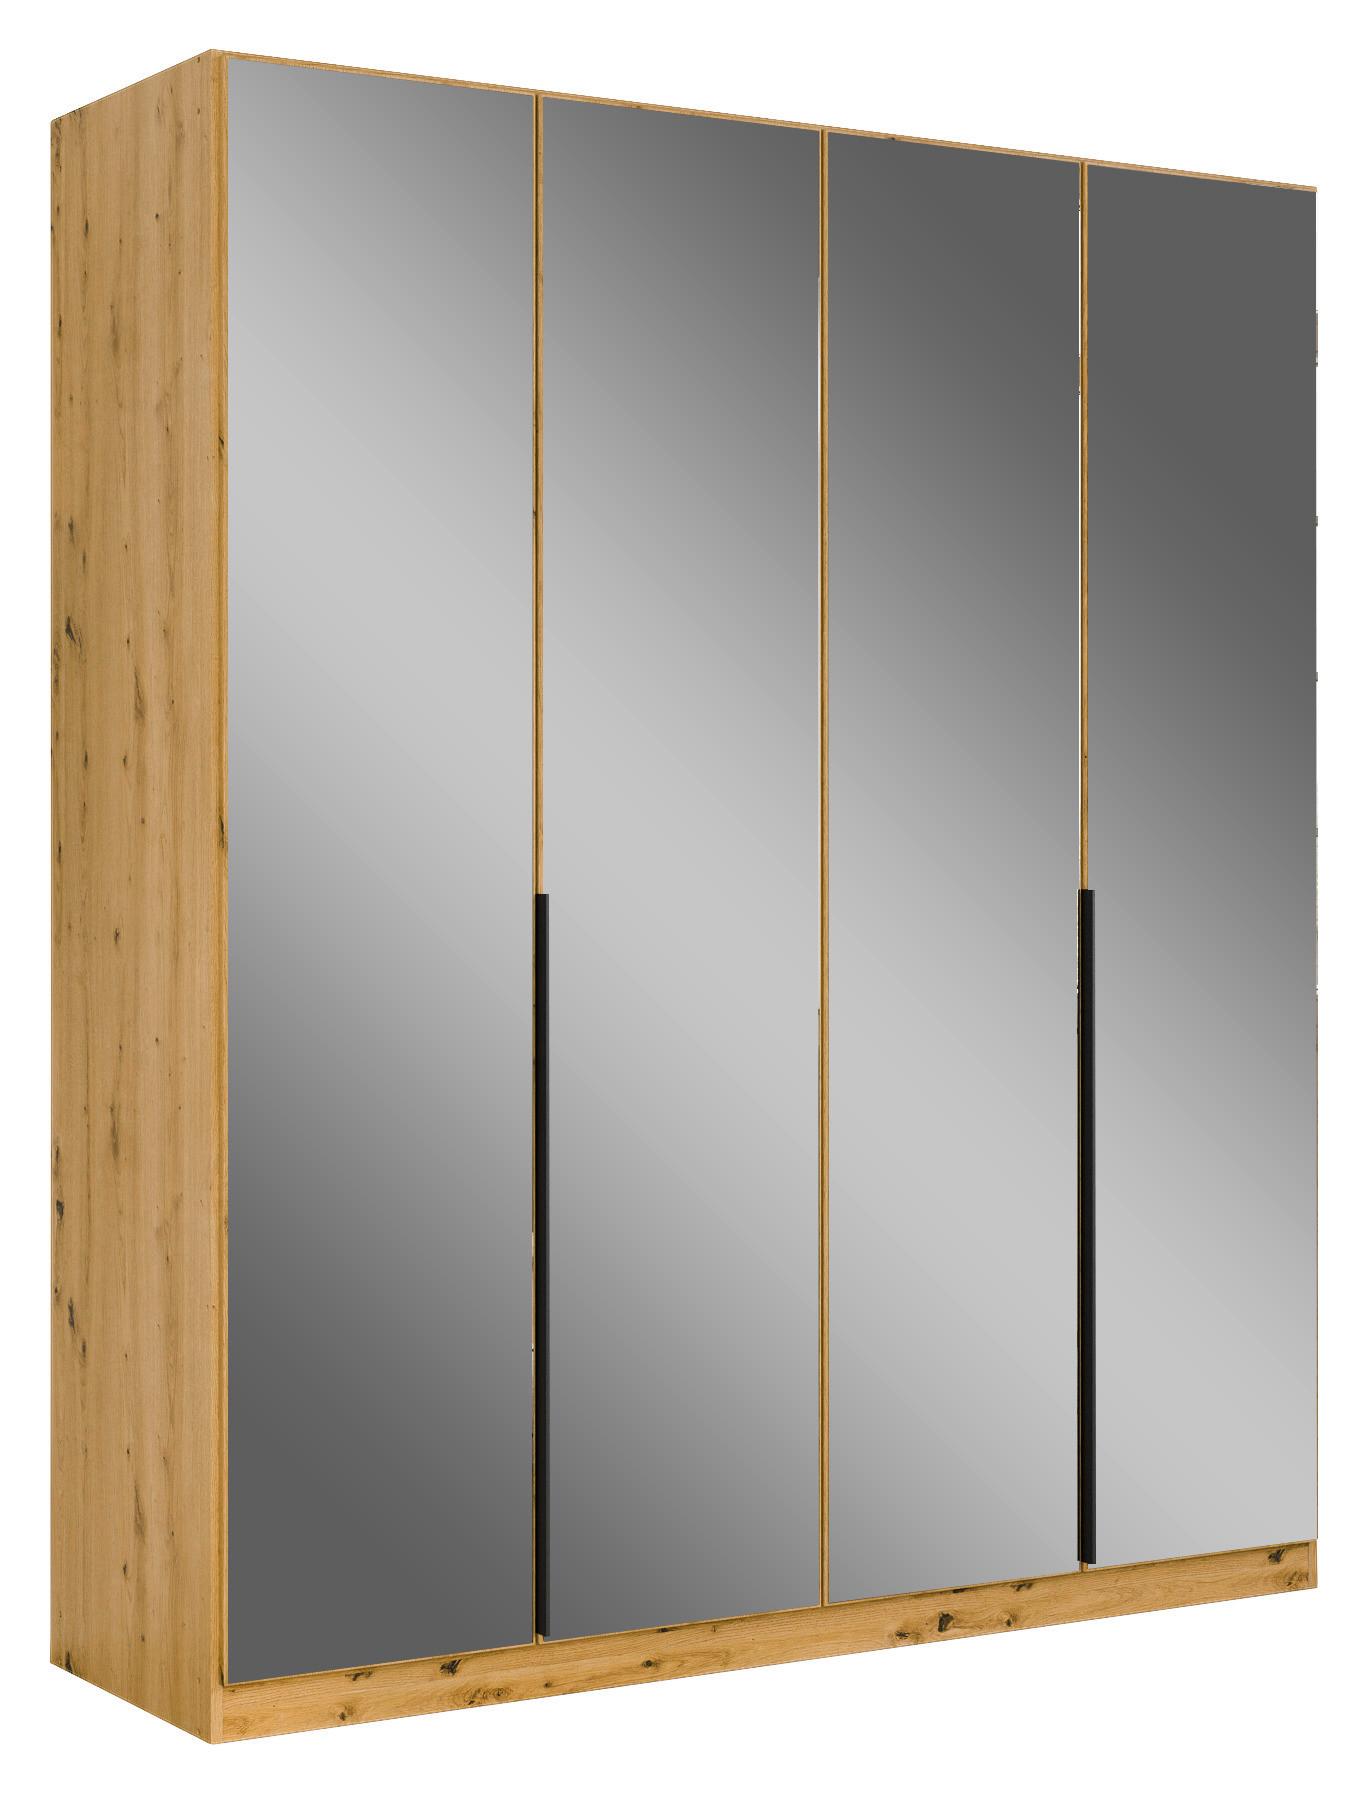 Drehtürenschrank Skyla Eiche Artisan/Glas B: 181 cm - Eiche Artisan, MODERN, Holzwerkstoff (181/210/54cm) - Rauch Möbel